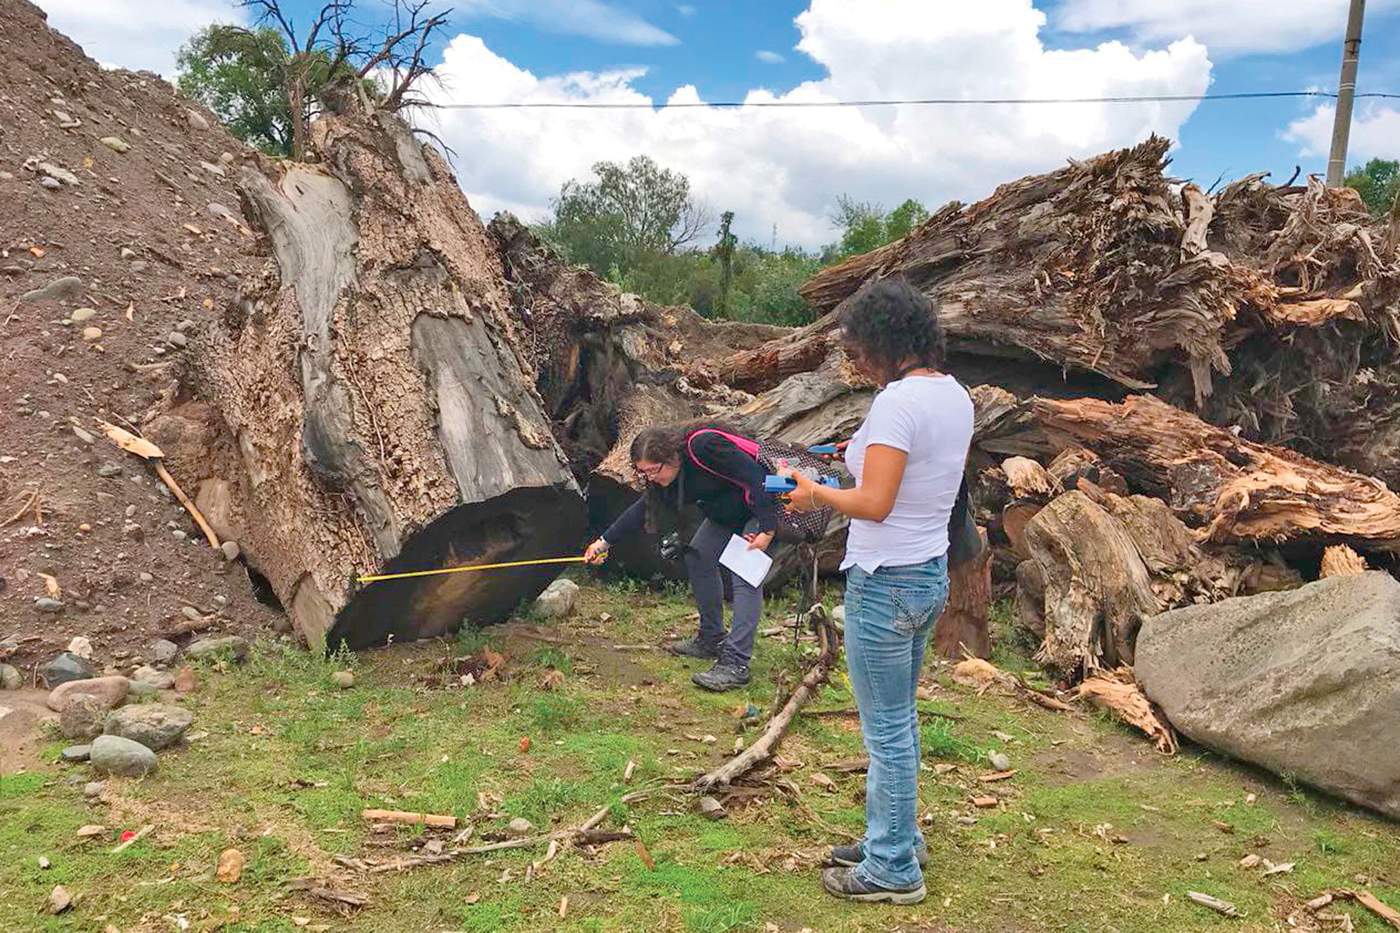 Con una crisis ambiental de suelo, aire, agua y tierra la región de Tula-Tepeji, en el estado de Hidalgo, podría convertirse en una de las zonas más contaminadas, advirtieron grupos ambientalistas. (EL UNIVERSAL)